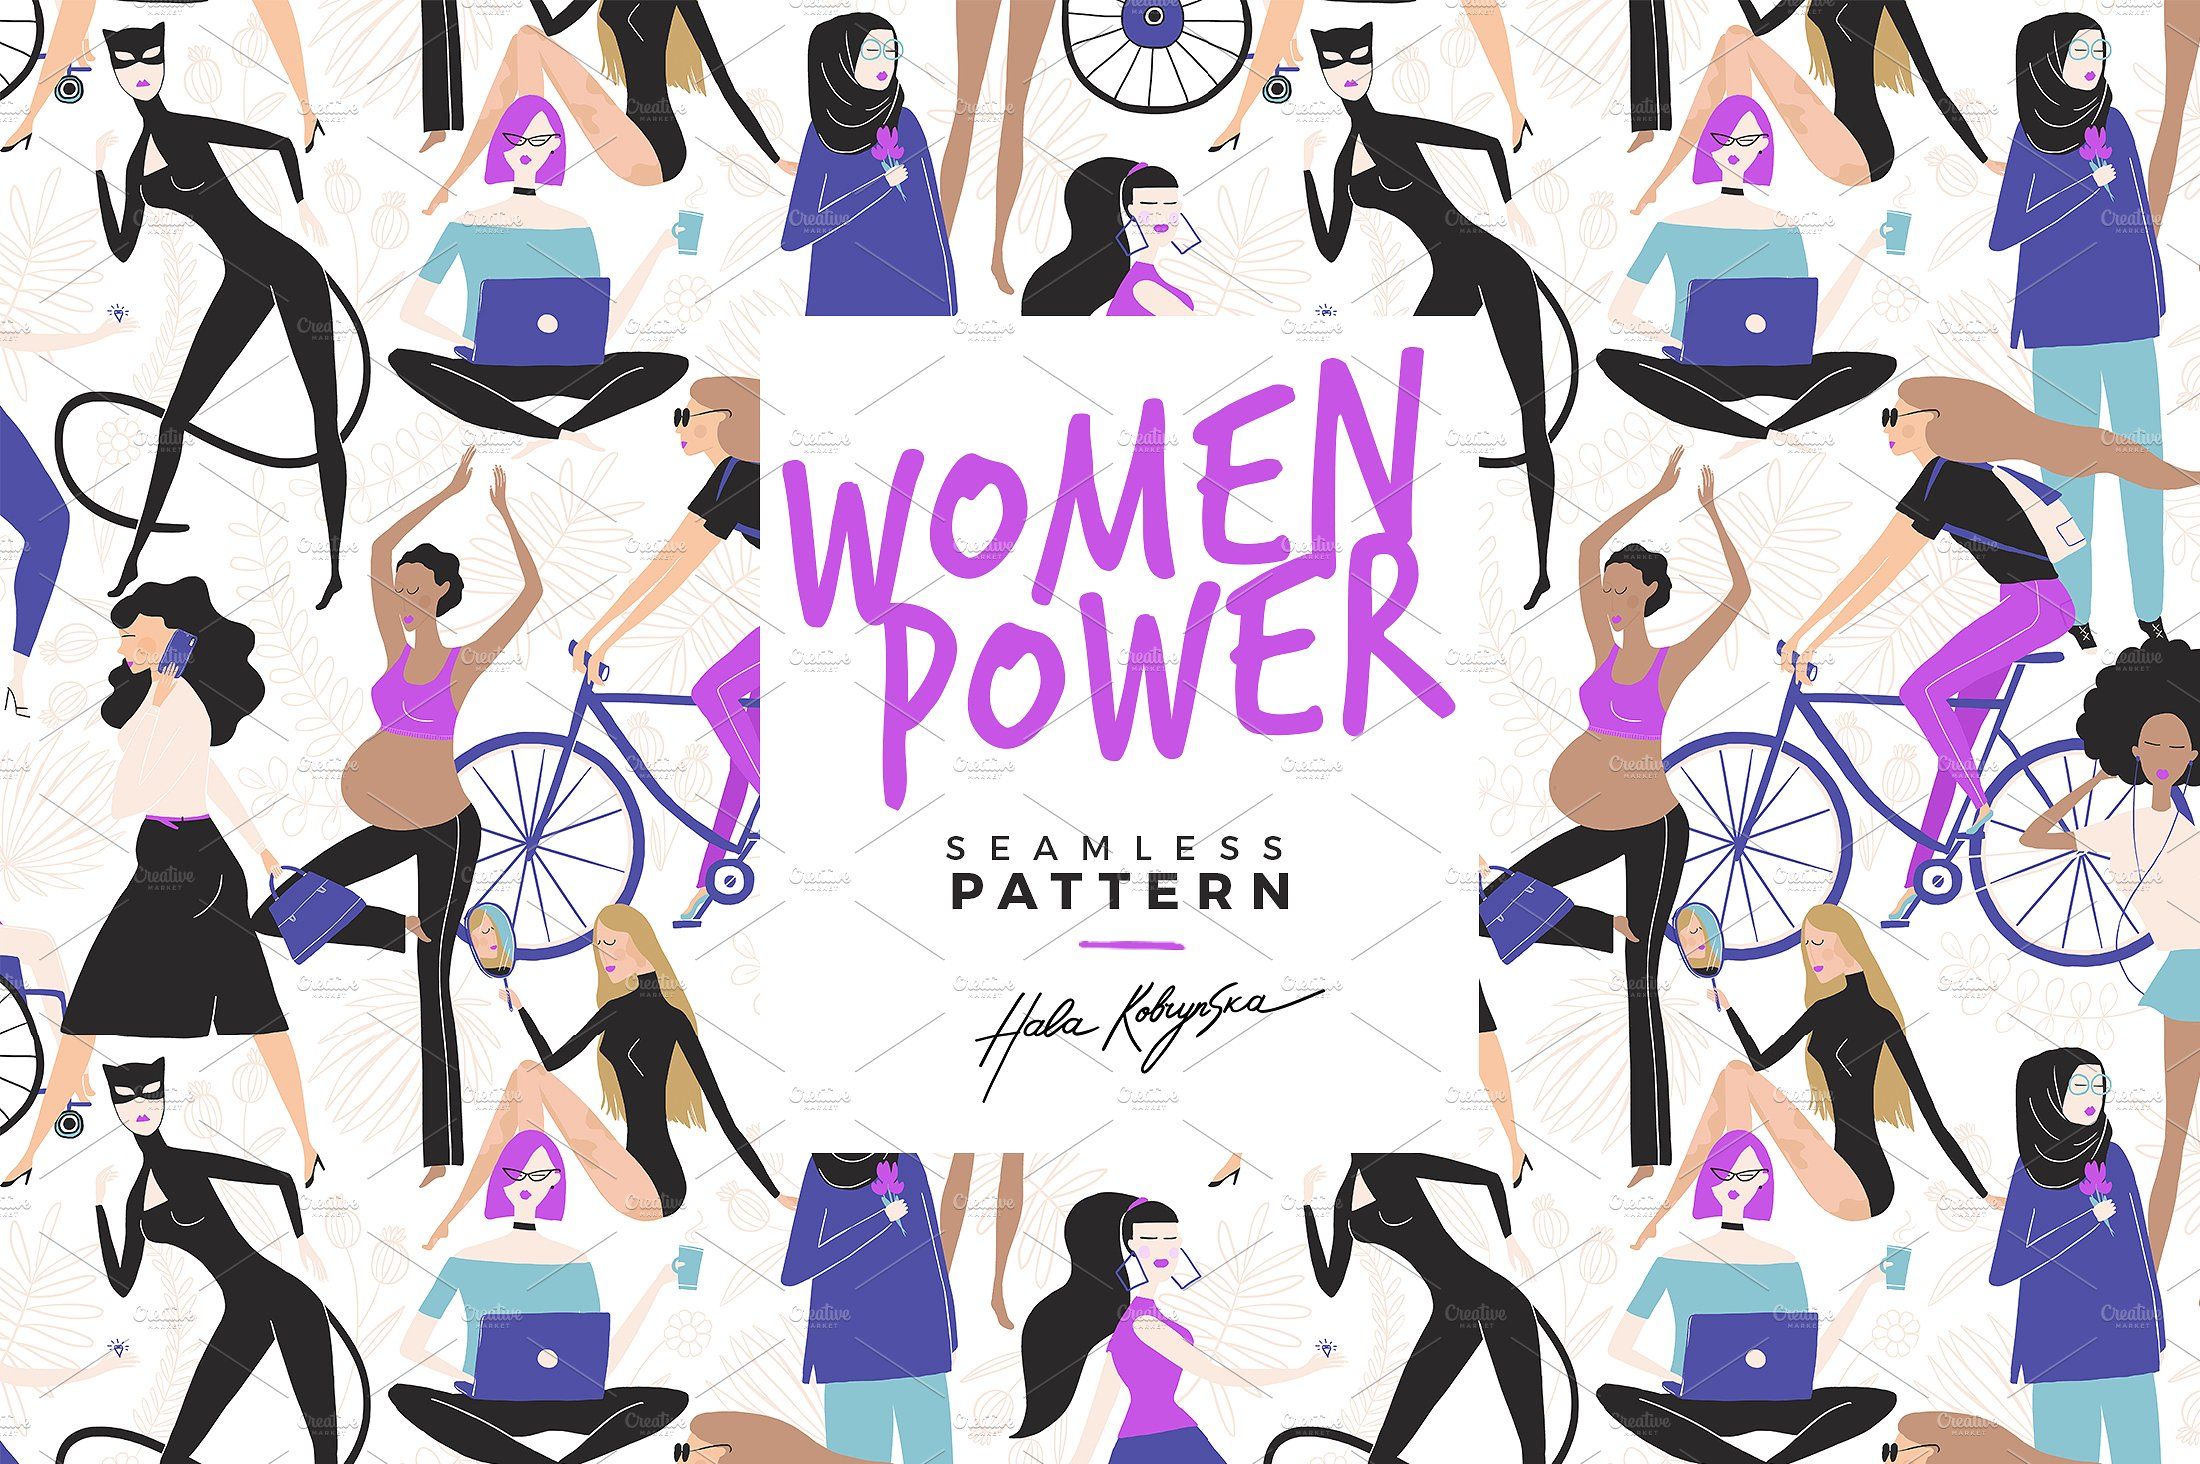 Women Power seamless pattern. Seamless patterns